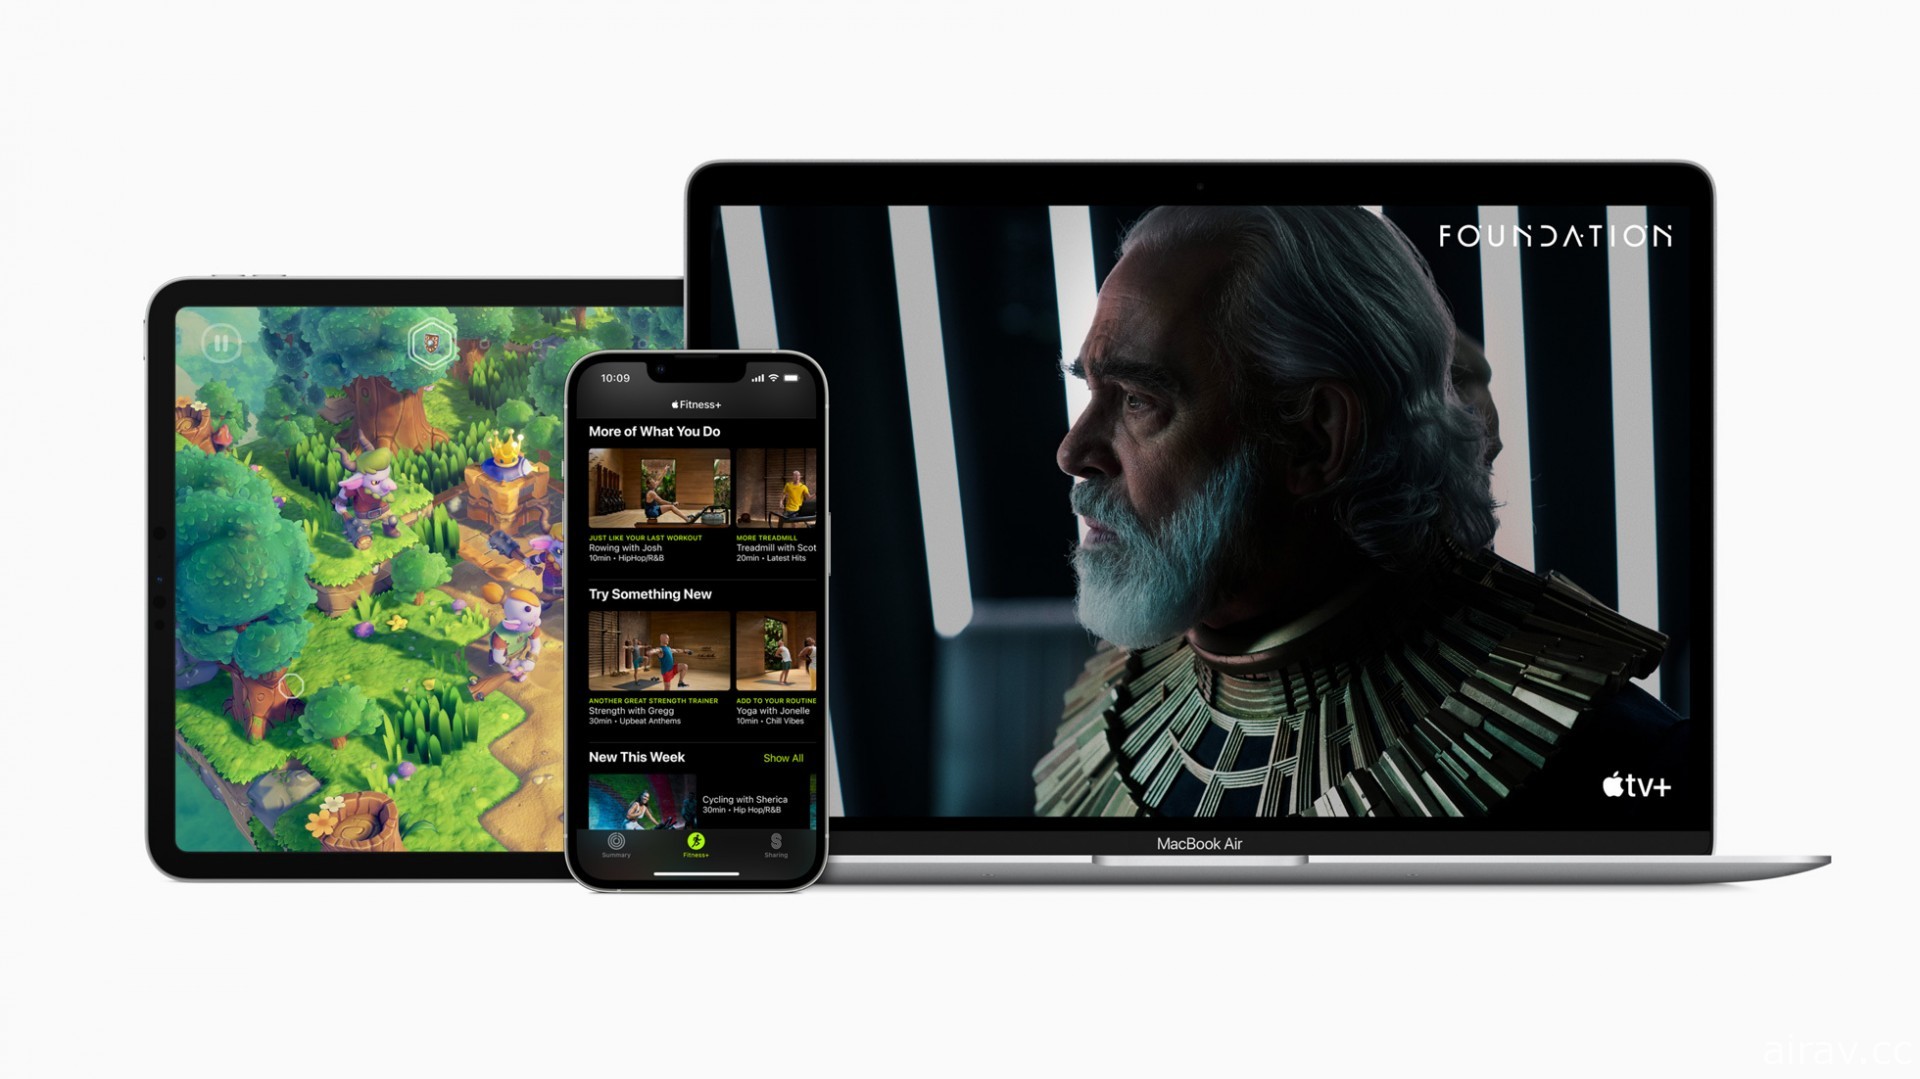 Apple 回顧 2021 年內容 展望 2022 年即將推出的新遊戲、音樂、電影等更多體驗